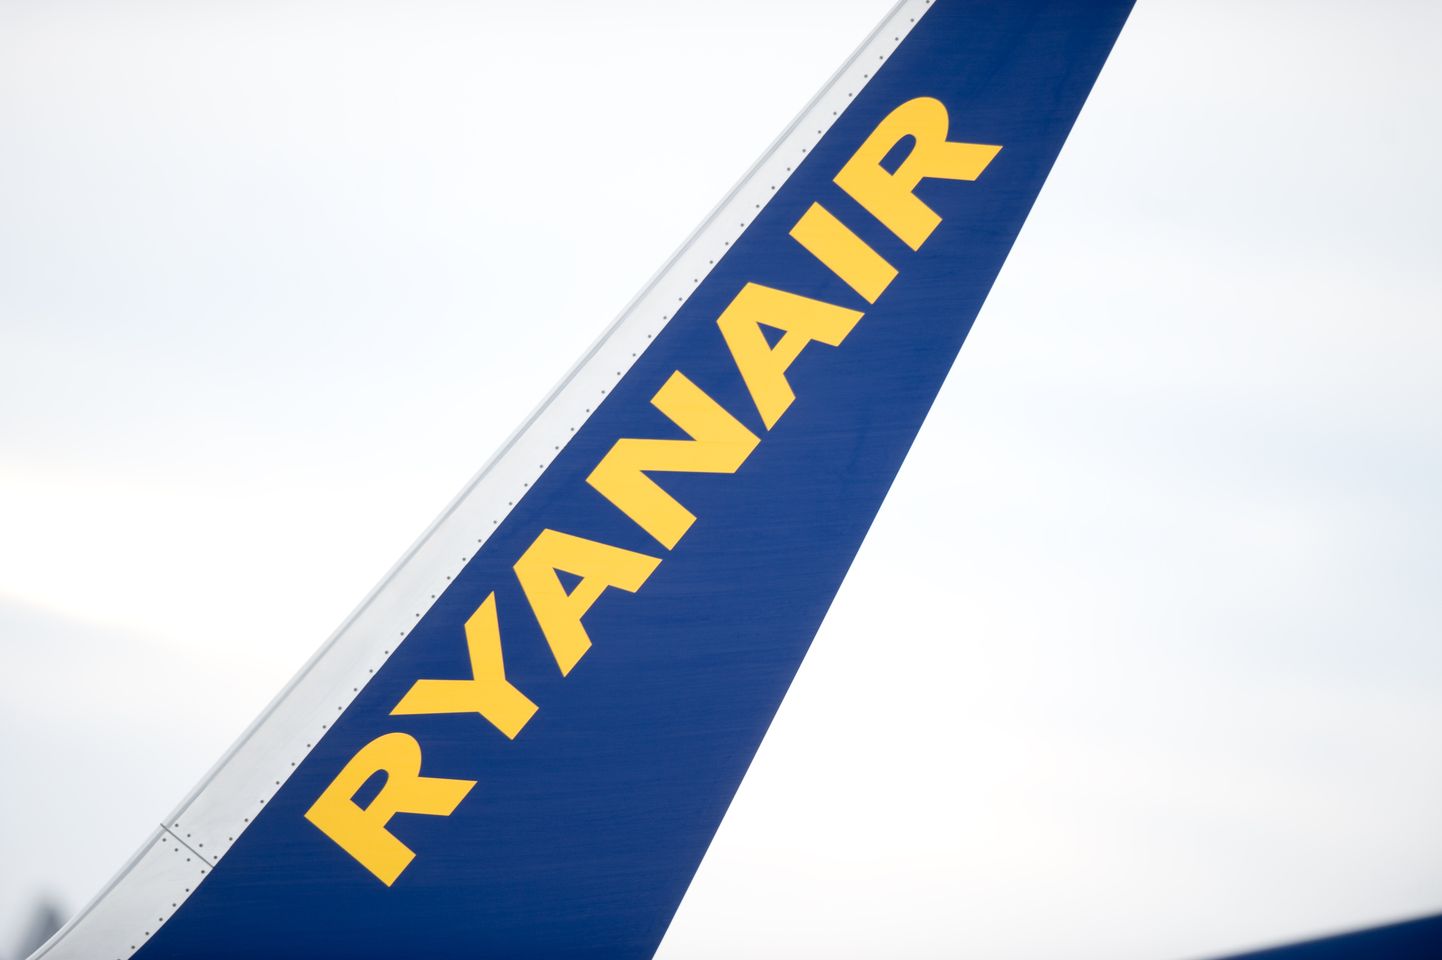 Логотип Ryanair. Иллюстративное фото.